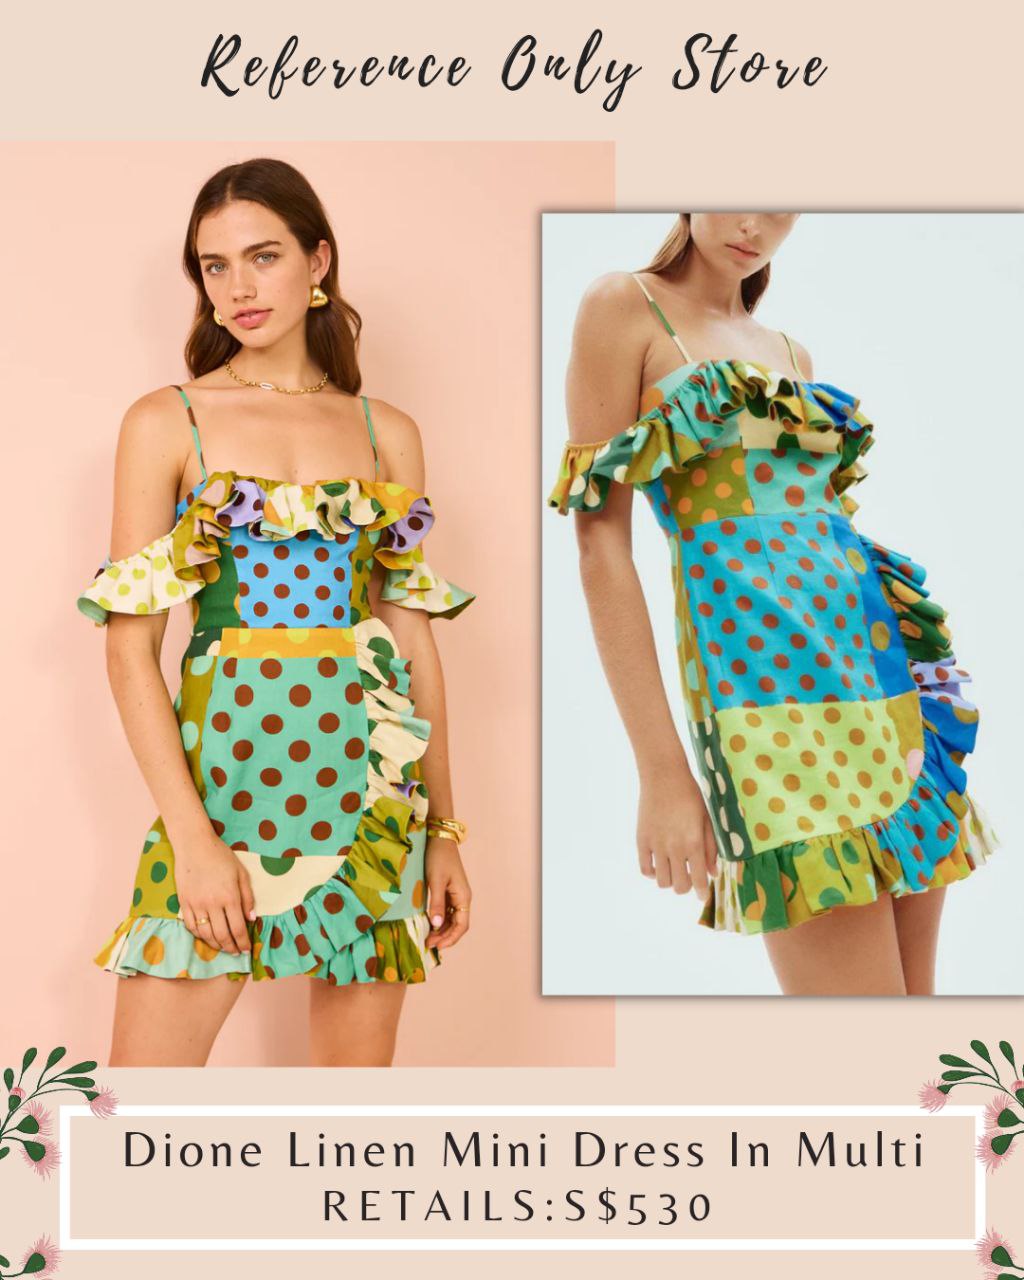 AM Dione Linen Mini Dress in Multi